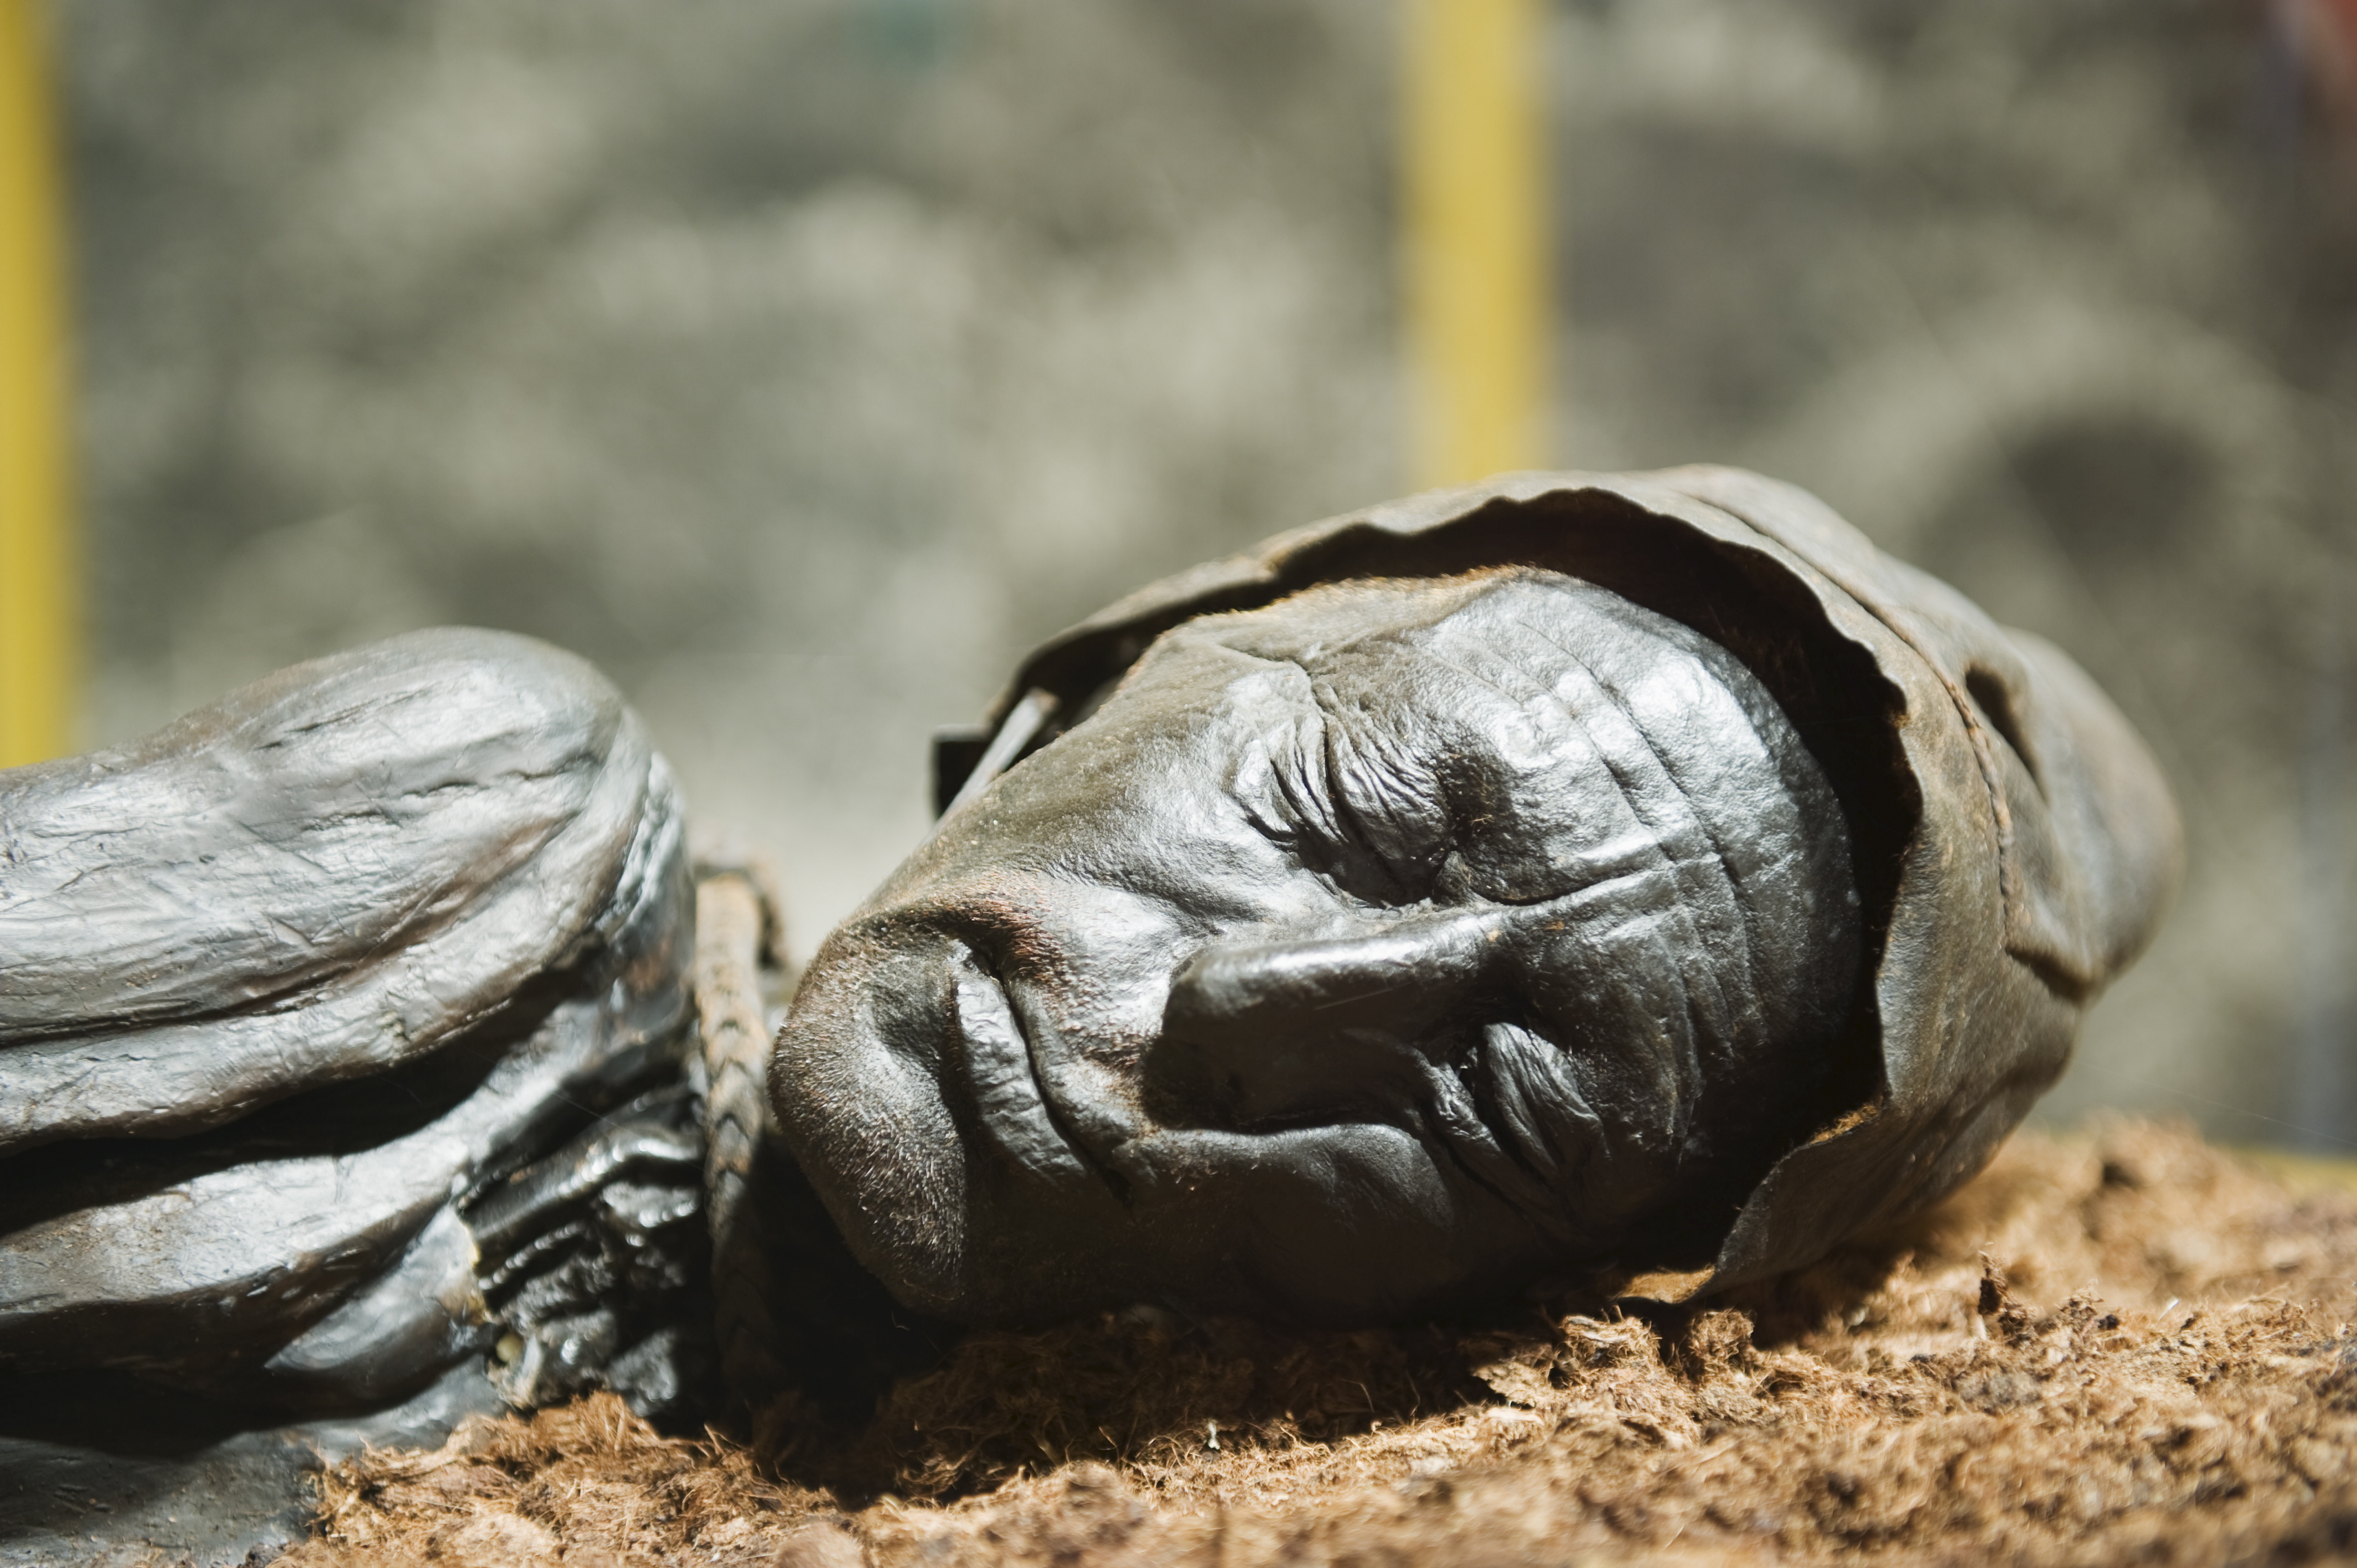 Tollund Man, murdered in Jutland more than 2,300 years ago. Photo: Corbis